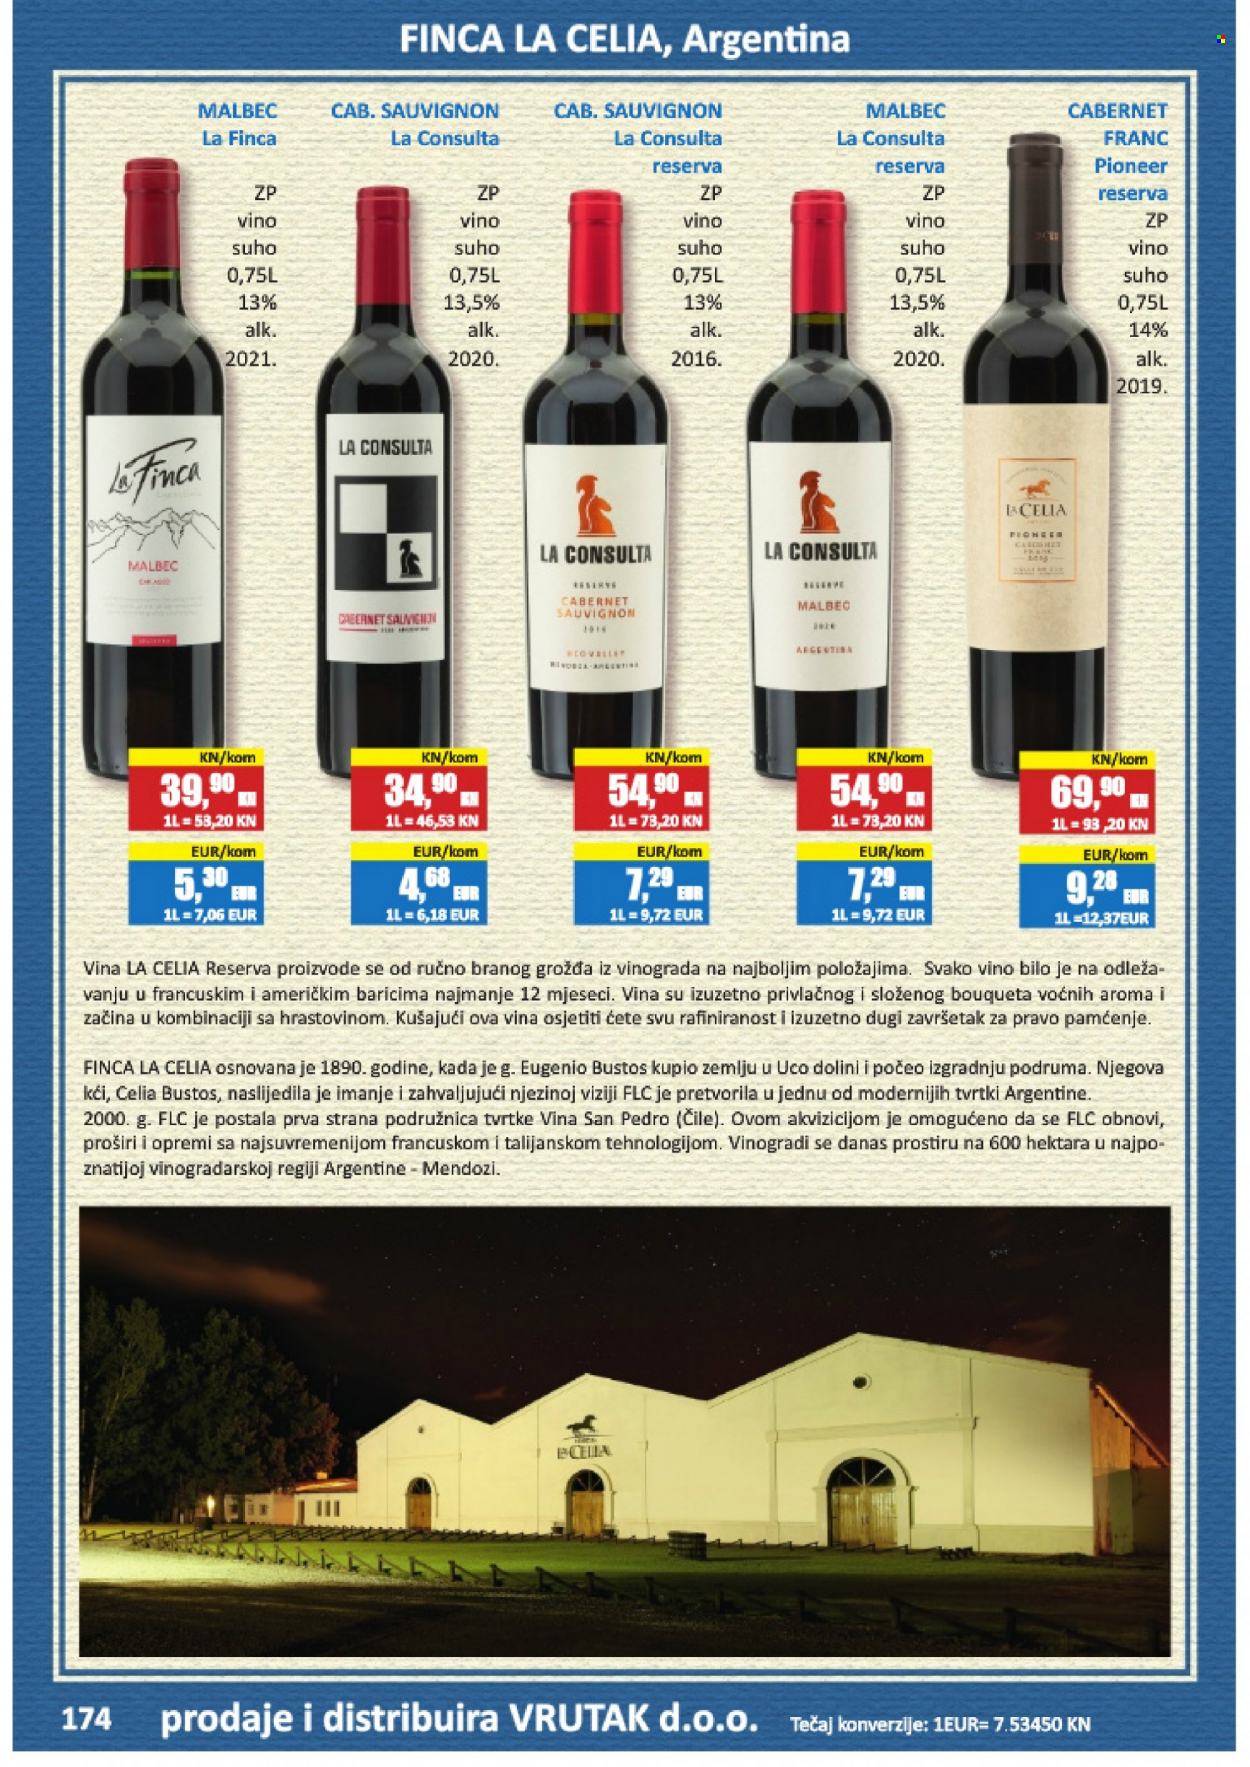 thumbnail - Vrutak katalog - Sniženi proizvodi - Cabernet Sauvignon, crno vino, Pioneer, vino, Malbec, alkohol. Stranica 174.